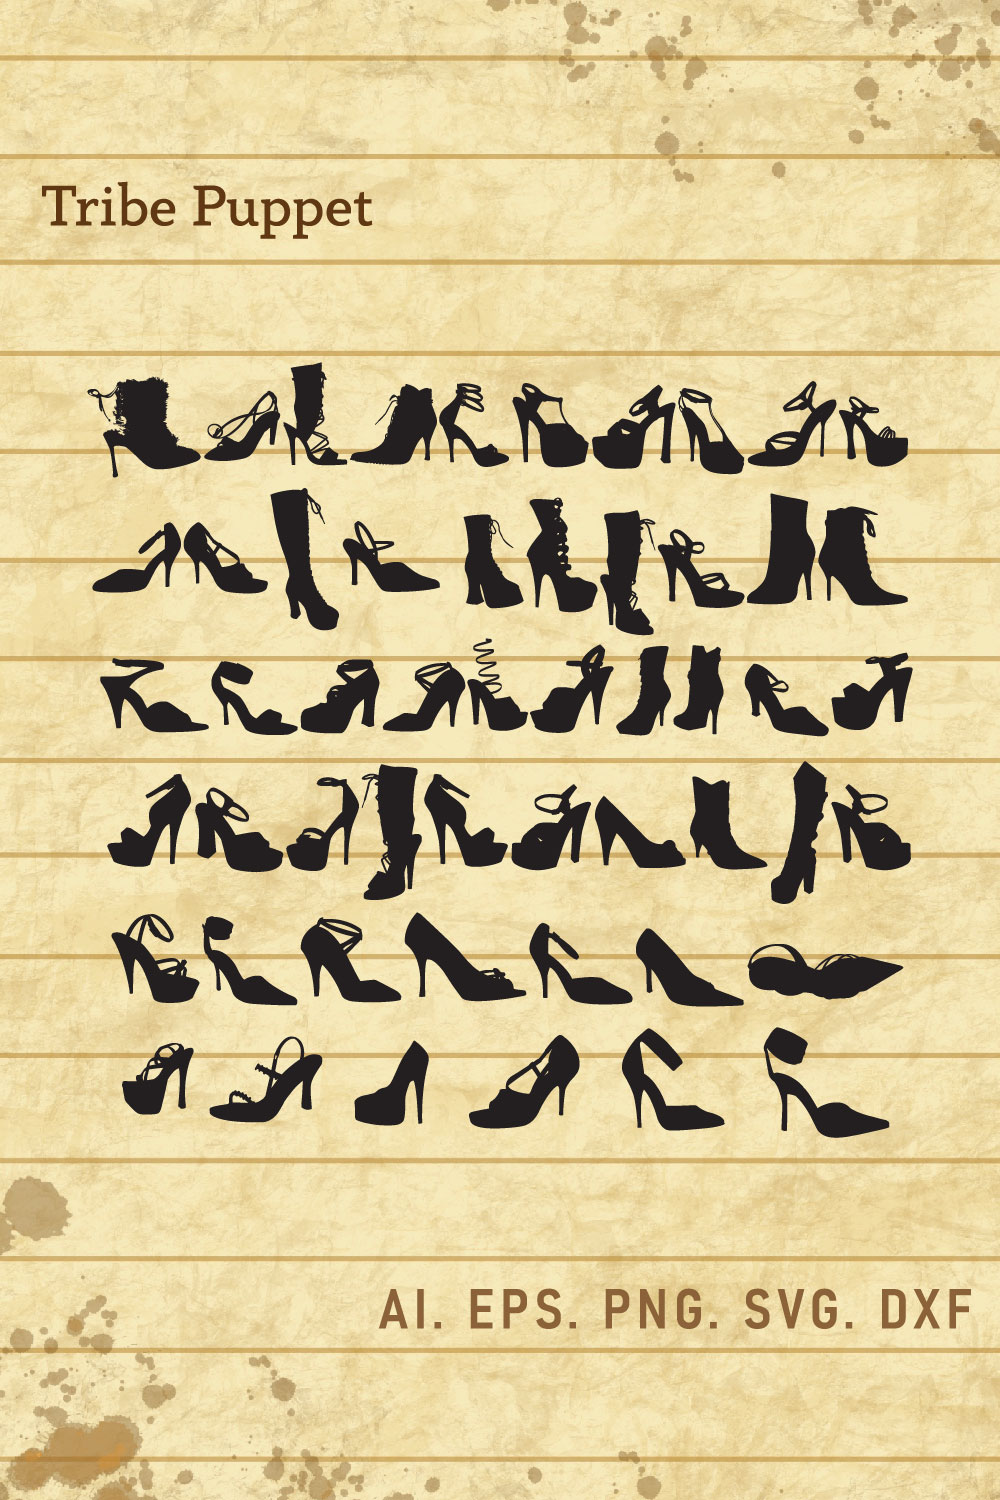 Ladies Shoe SVG pinterest preview image.